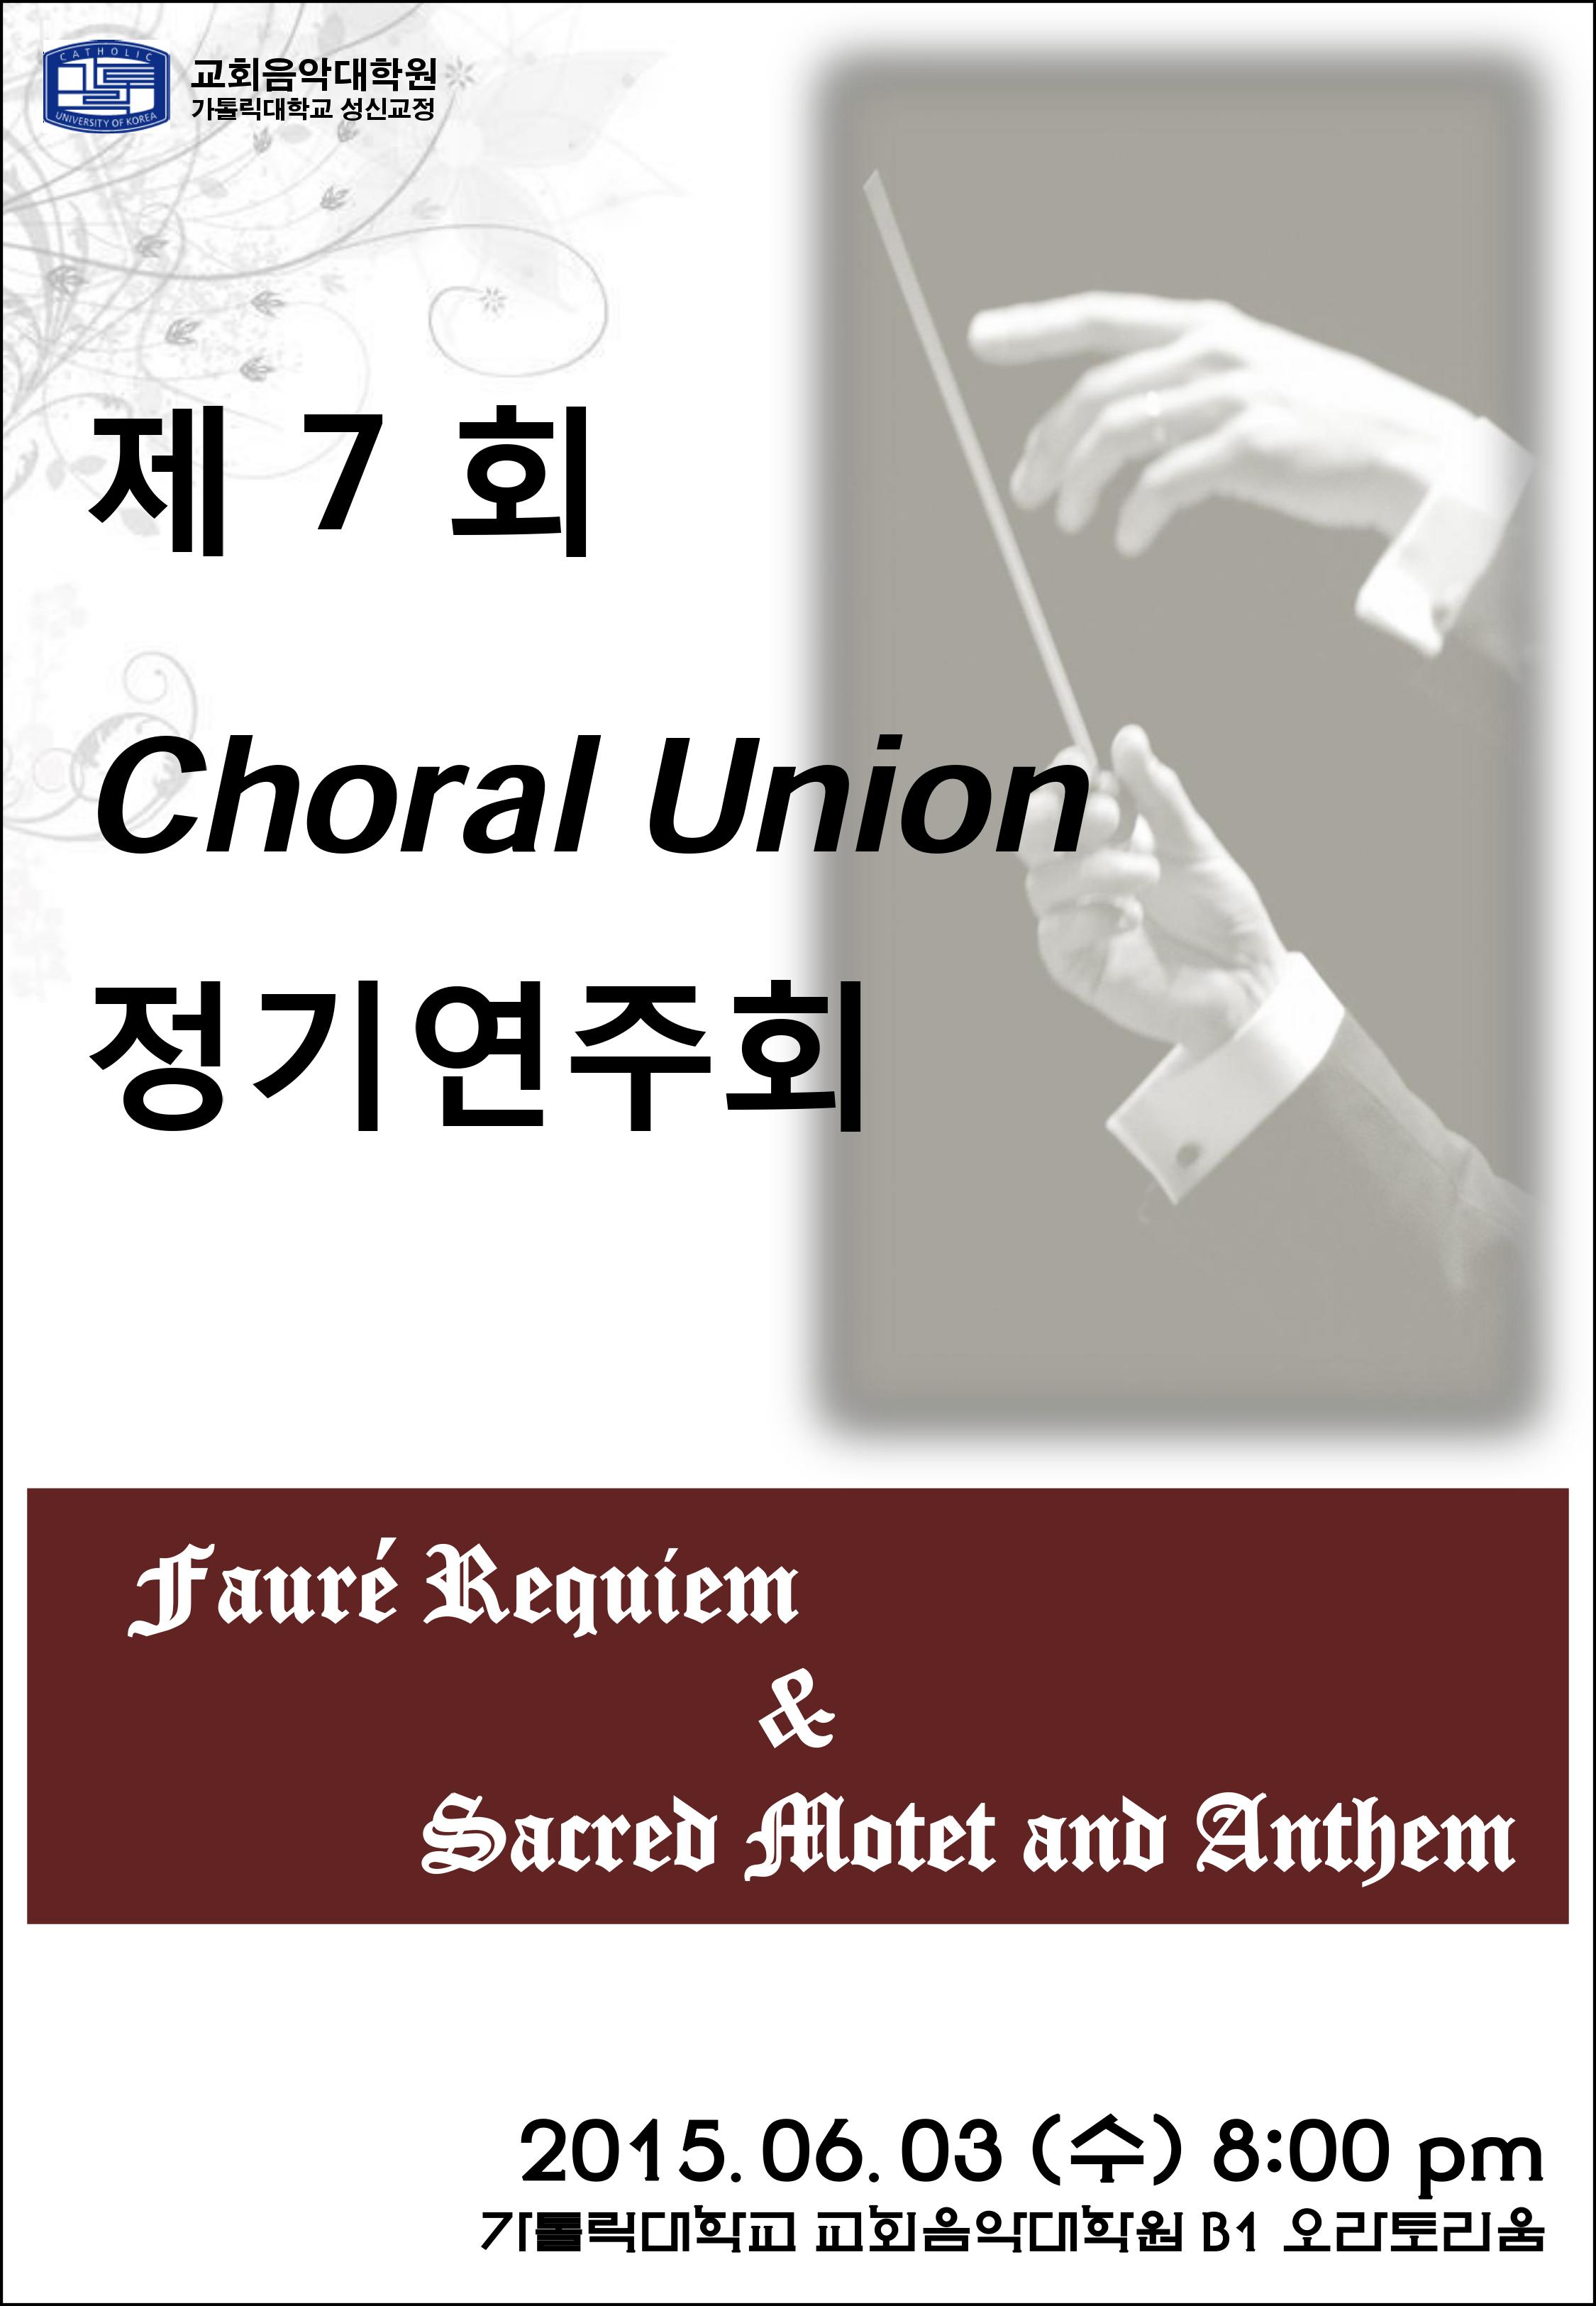 합창지휘전공 제7회 Choral Union 정기연주회 안내의 관련된 이미지 입니다.